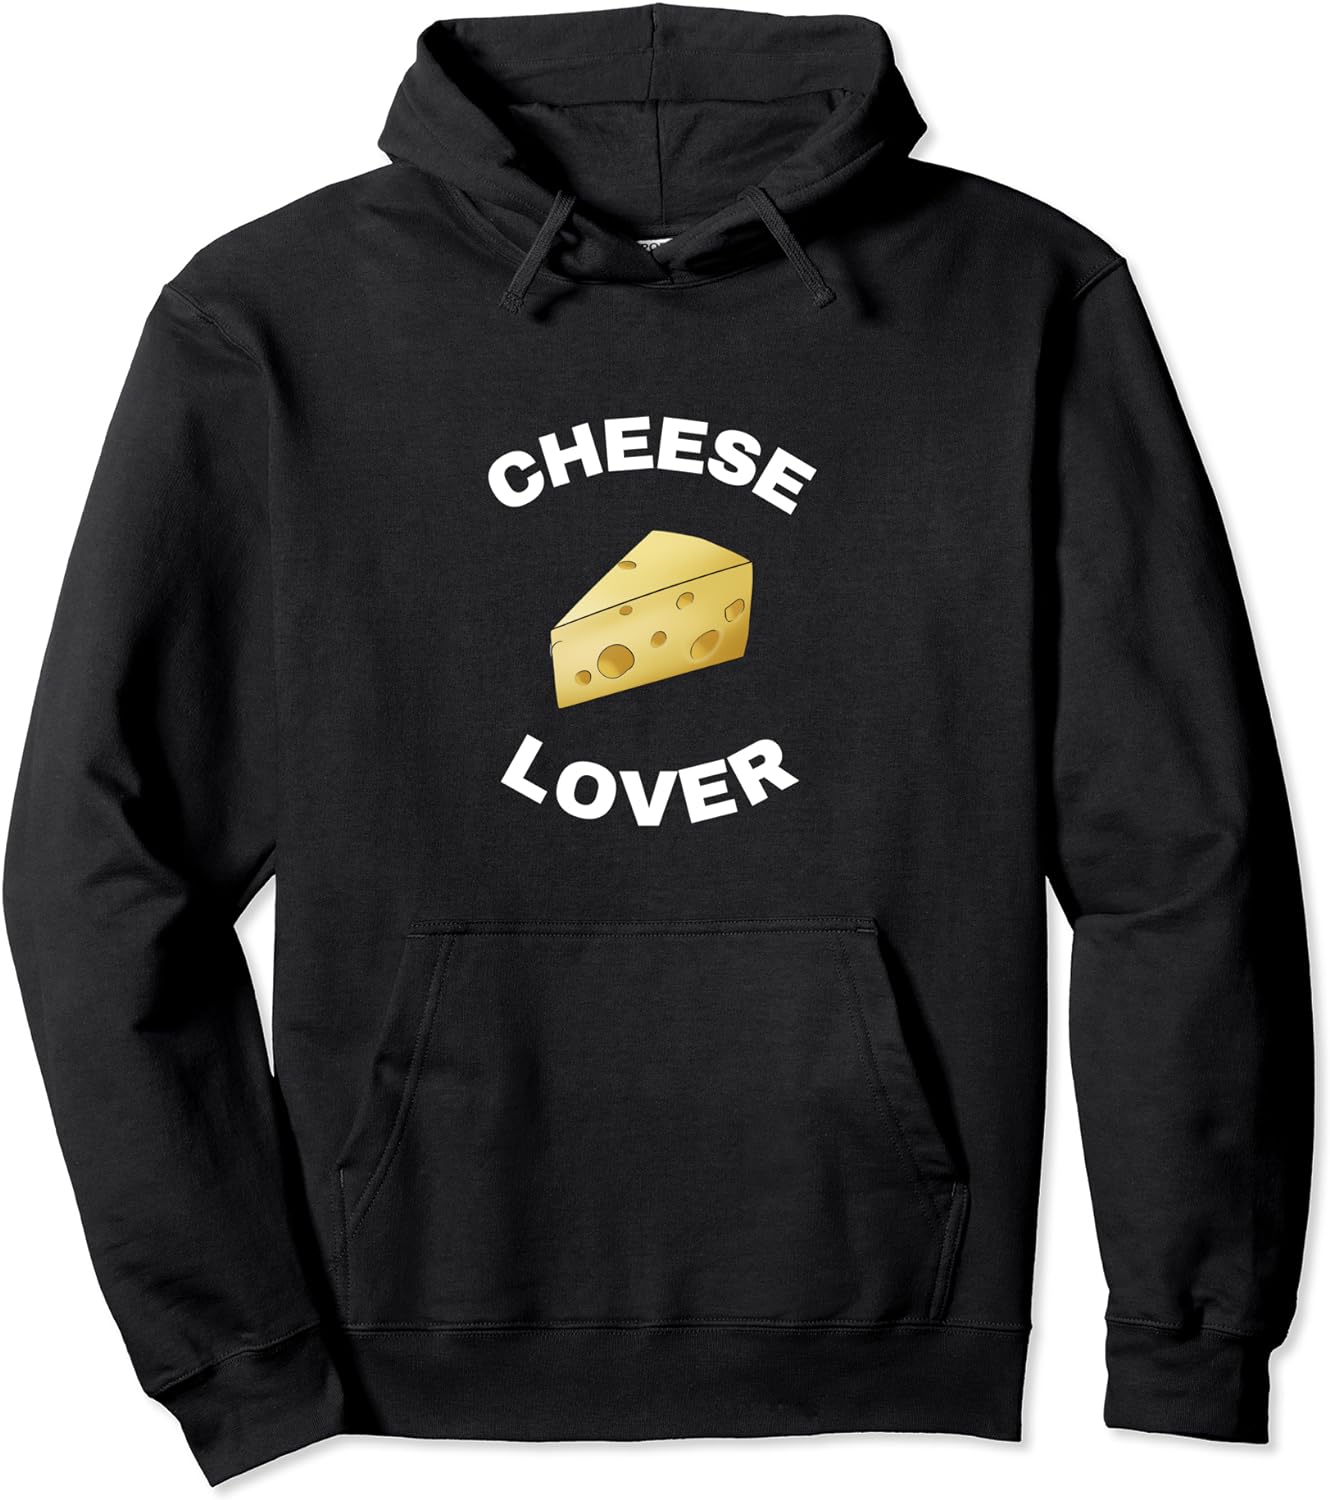 Cheese Lover Hoodie